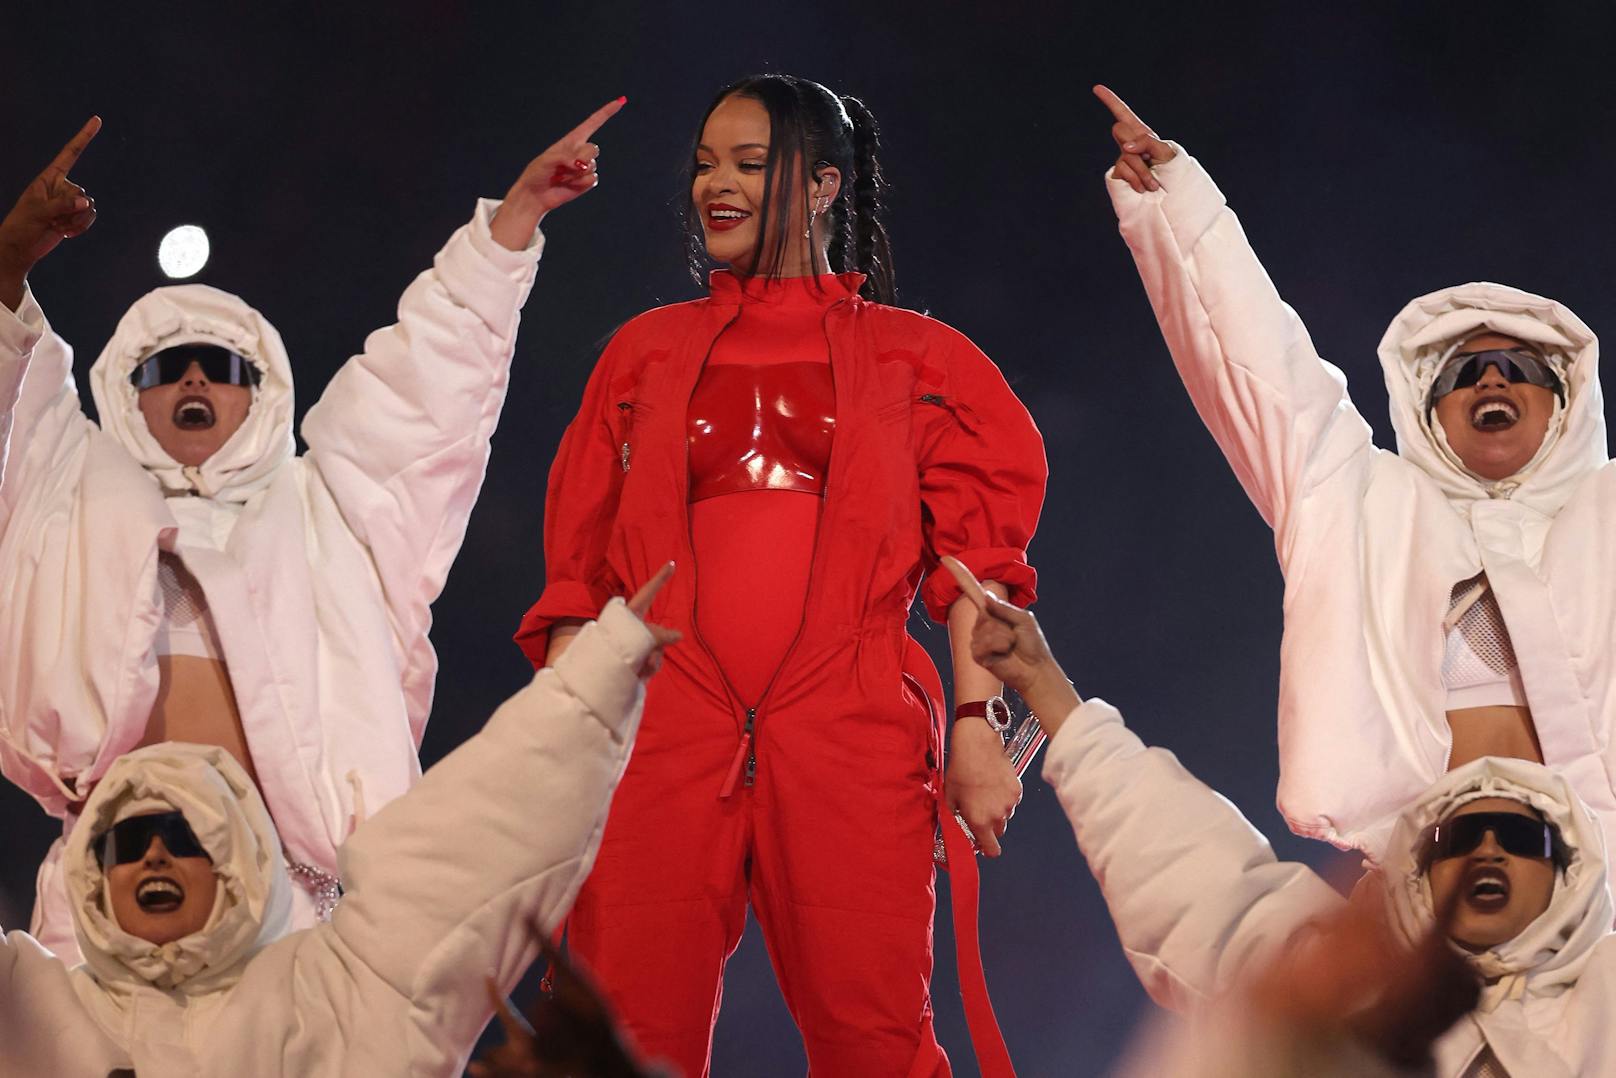 Rihanna ist zurück auf der Bühne! Mit Babybauch performte die 34-Jährige die Super-Bowl-Halbzeitshow in einem phänomenalen Outfit.